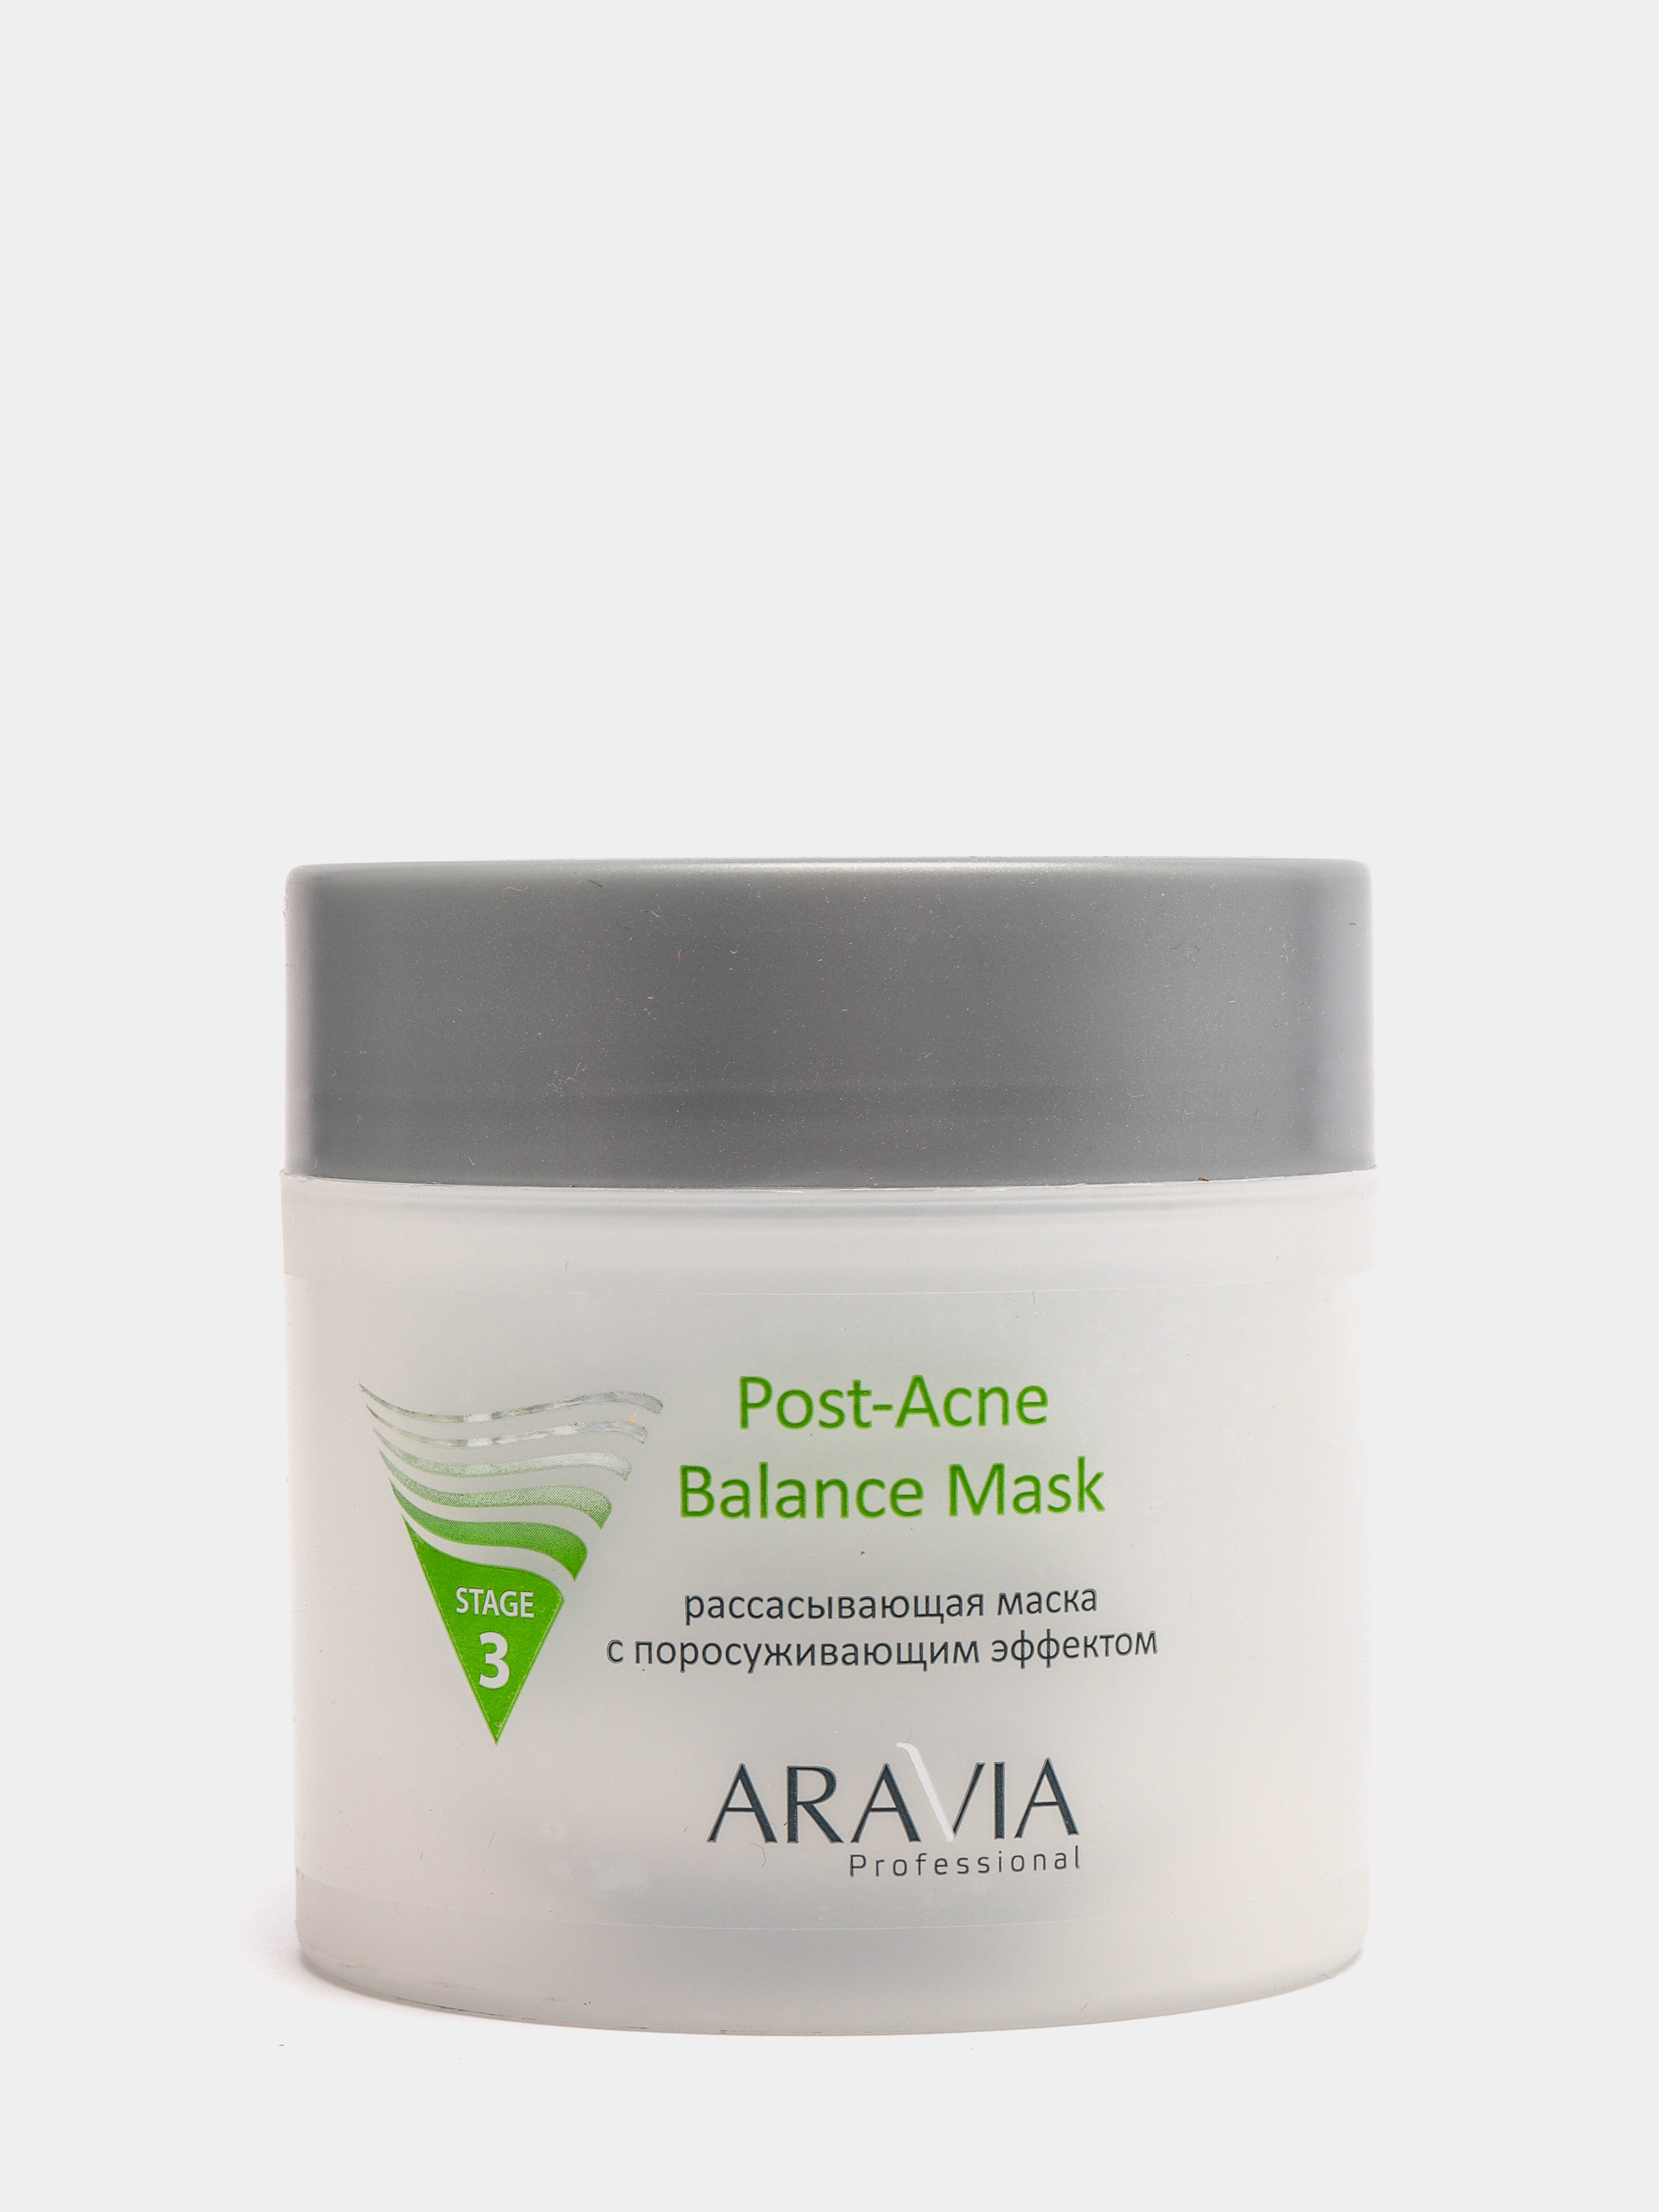 Рассасывающая маска с поросуживающим эффектом. Aravia Post acne Balance Mask. Аравия рассасывающая маска с поросуживающим эффектом. Post acne маска. Маска для лица с ментолом Аравия.